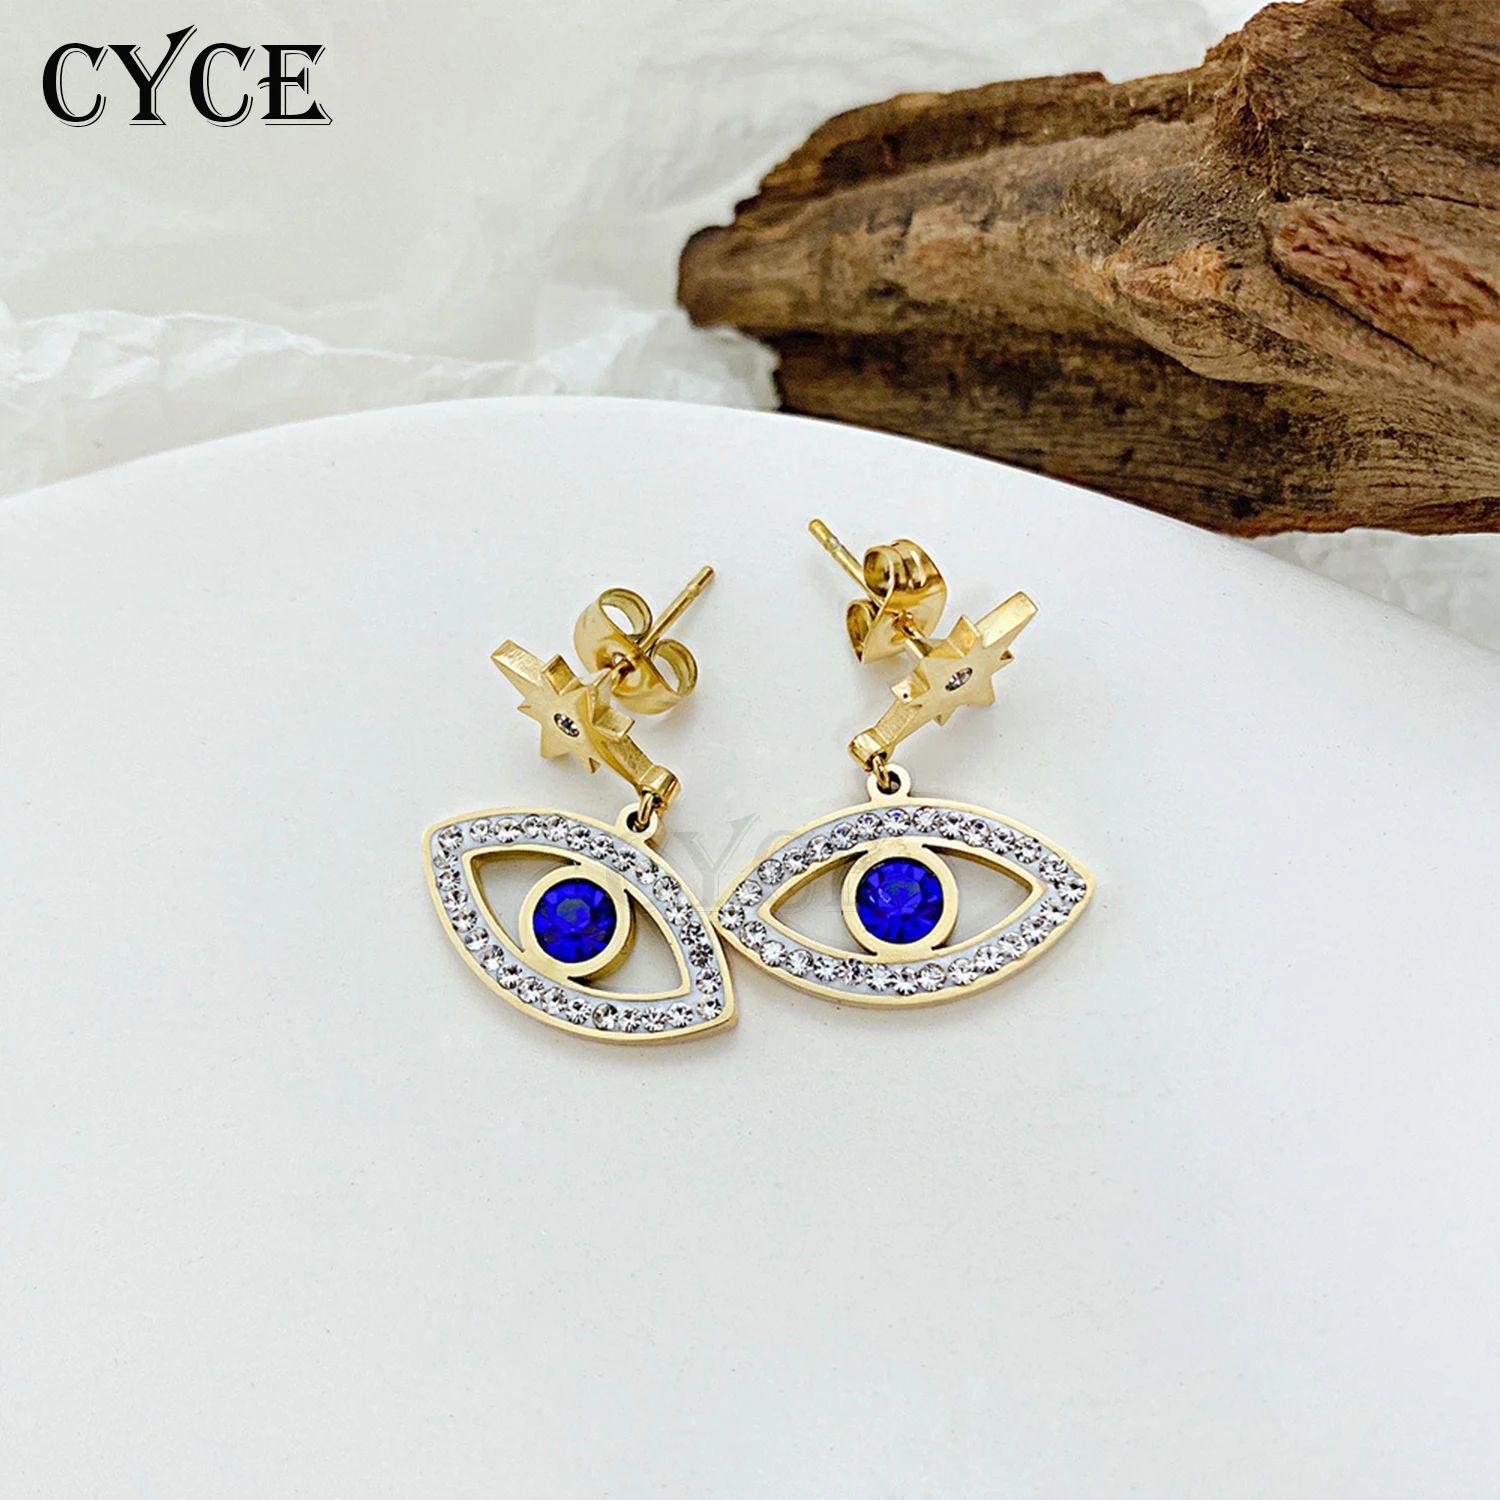 

CYCE 2021 Punk Inlaid Zircon Evil Eye Pendant Stainless Steel Earrings For Women Men Jewelry Gold Turkey Blue Eyes Stud Earrings